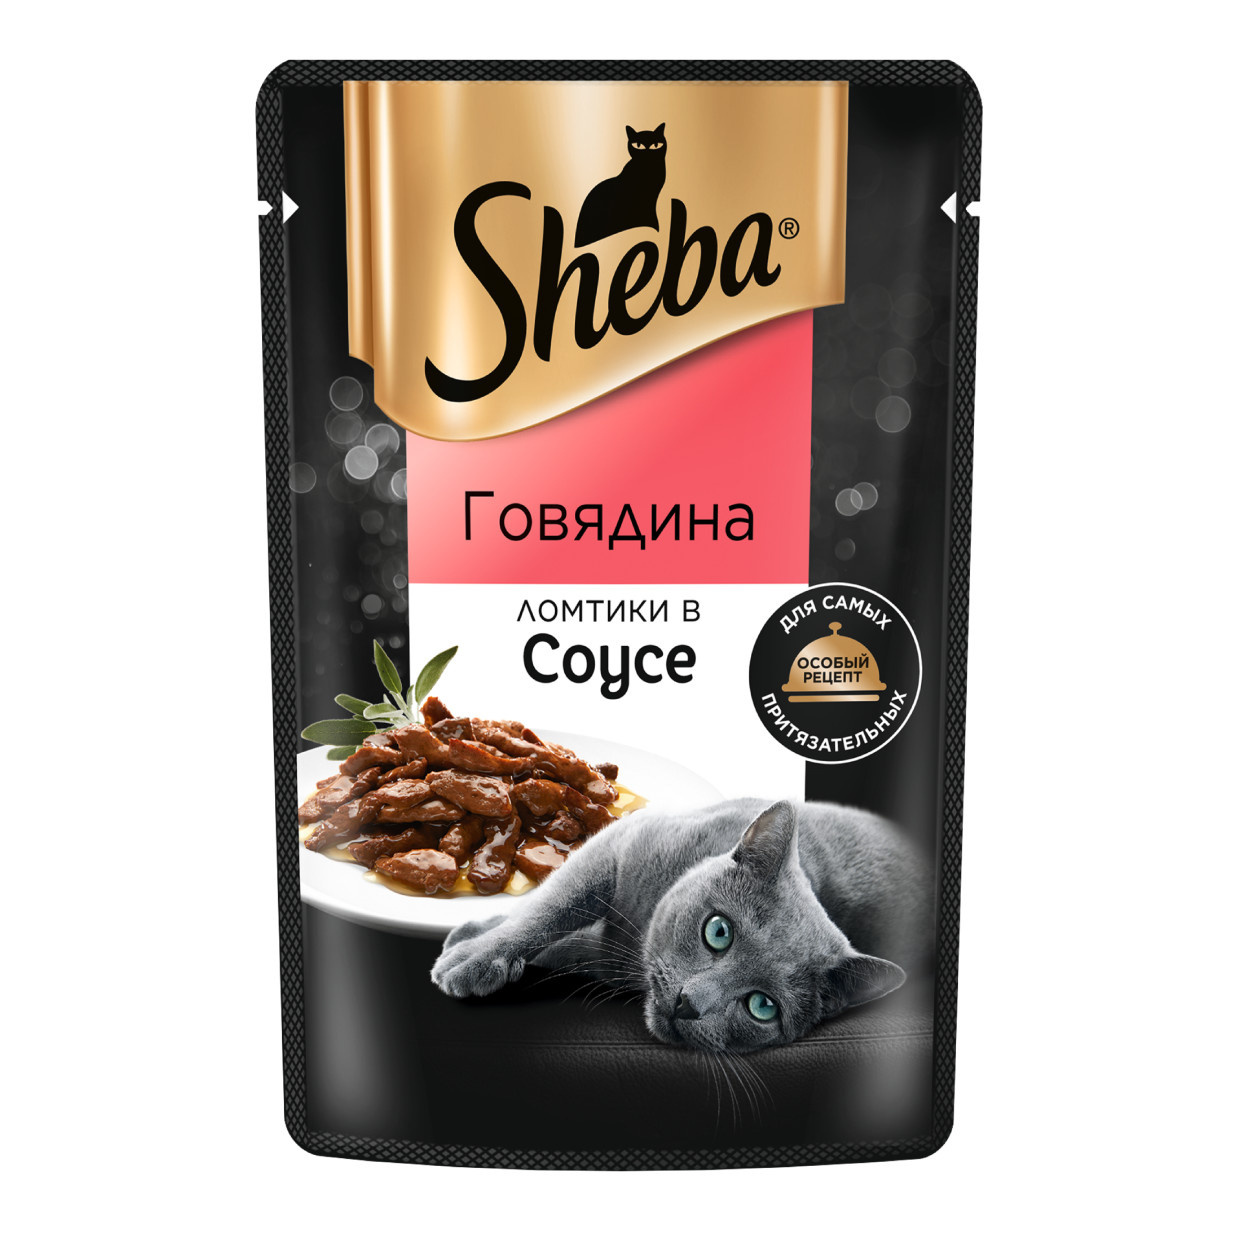 Sheba влажный корм для кошек «Ломтики в соусе с говядиной» (75 г)